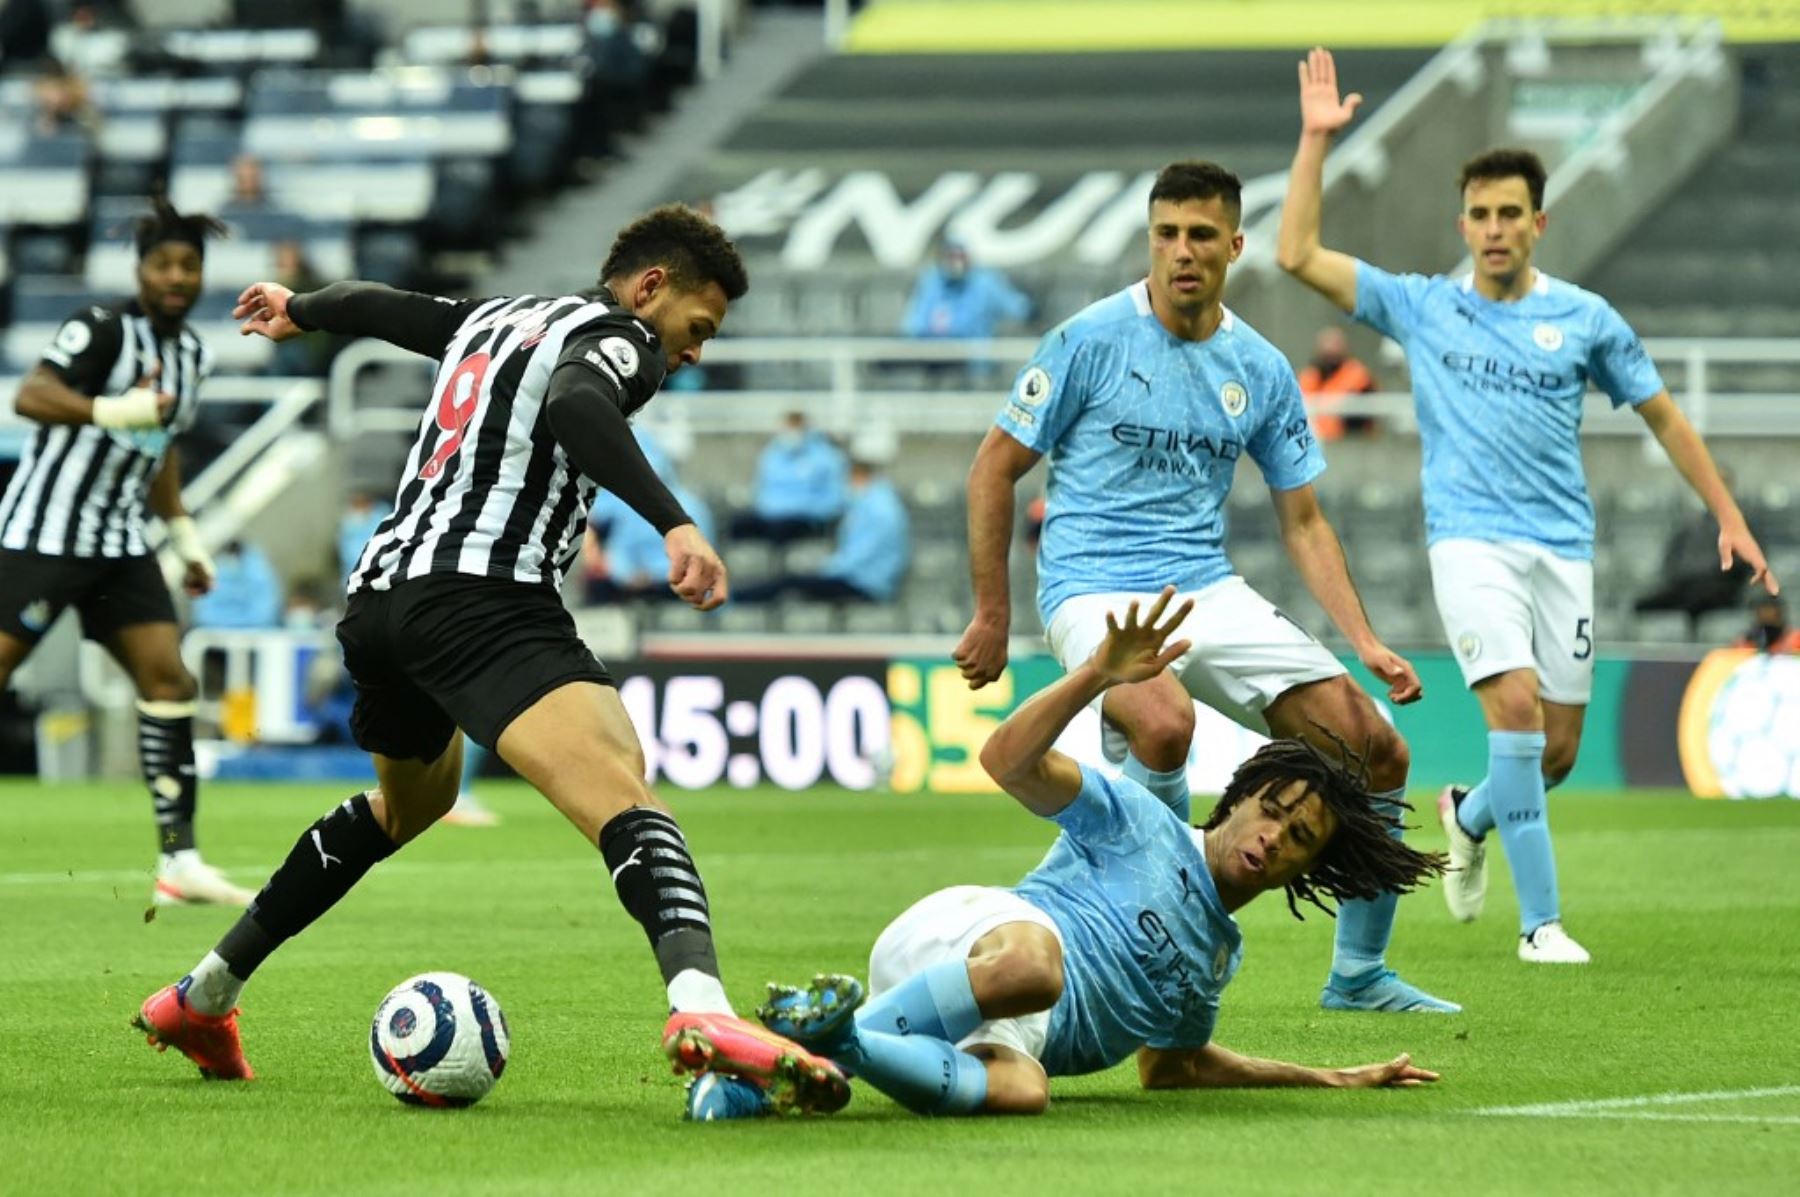 El defensor holandés del Manchester City, Nathan Ake, choca con el delantero brasileño del Newcastle United, Joelinton, durante el partido de fútbol de la Premier League inglesa entre el Newcastle United y el Manchester City en St James 